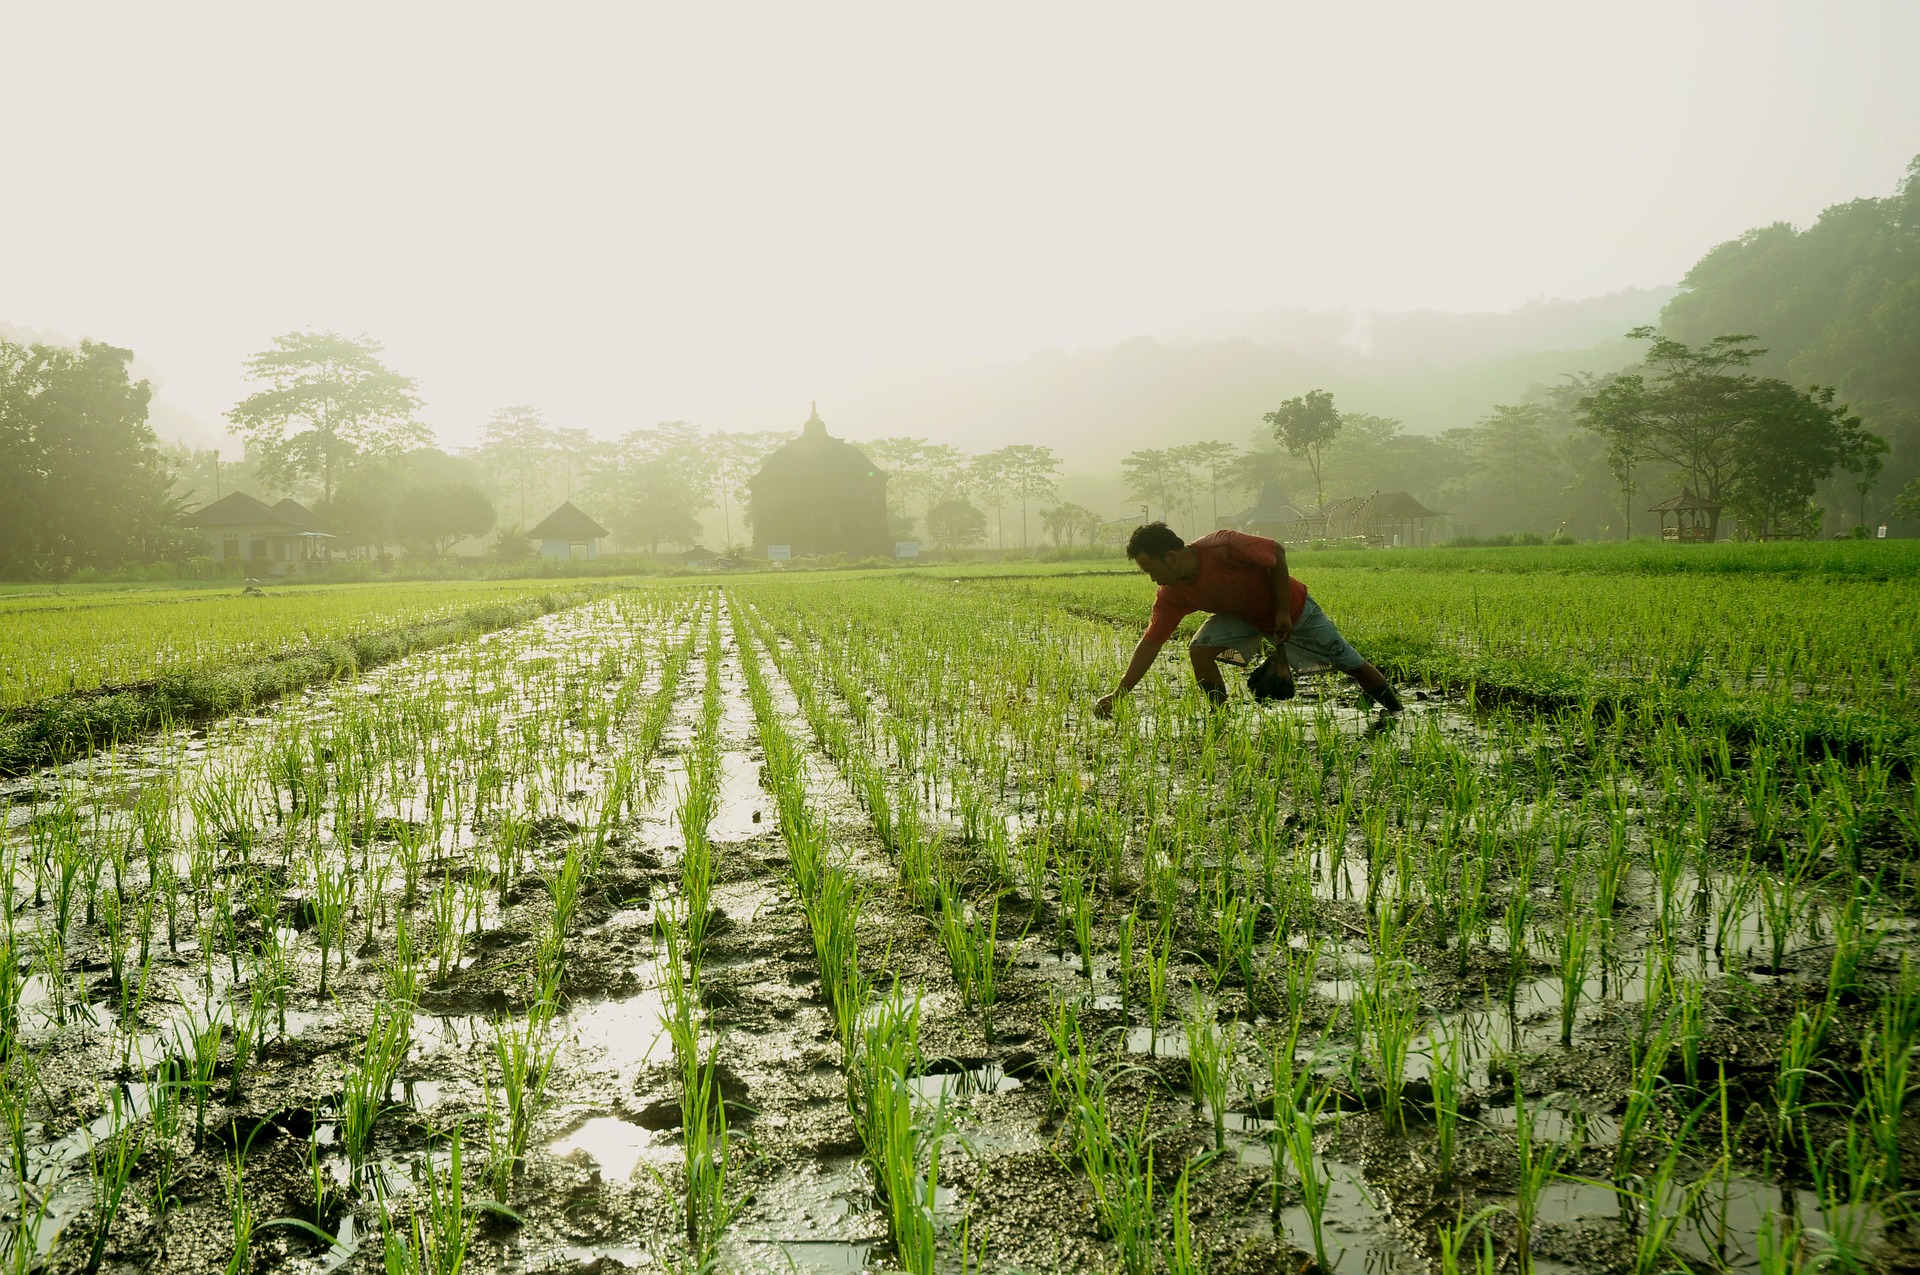 planting rice (photo courtesy of pixabay)